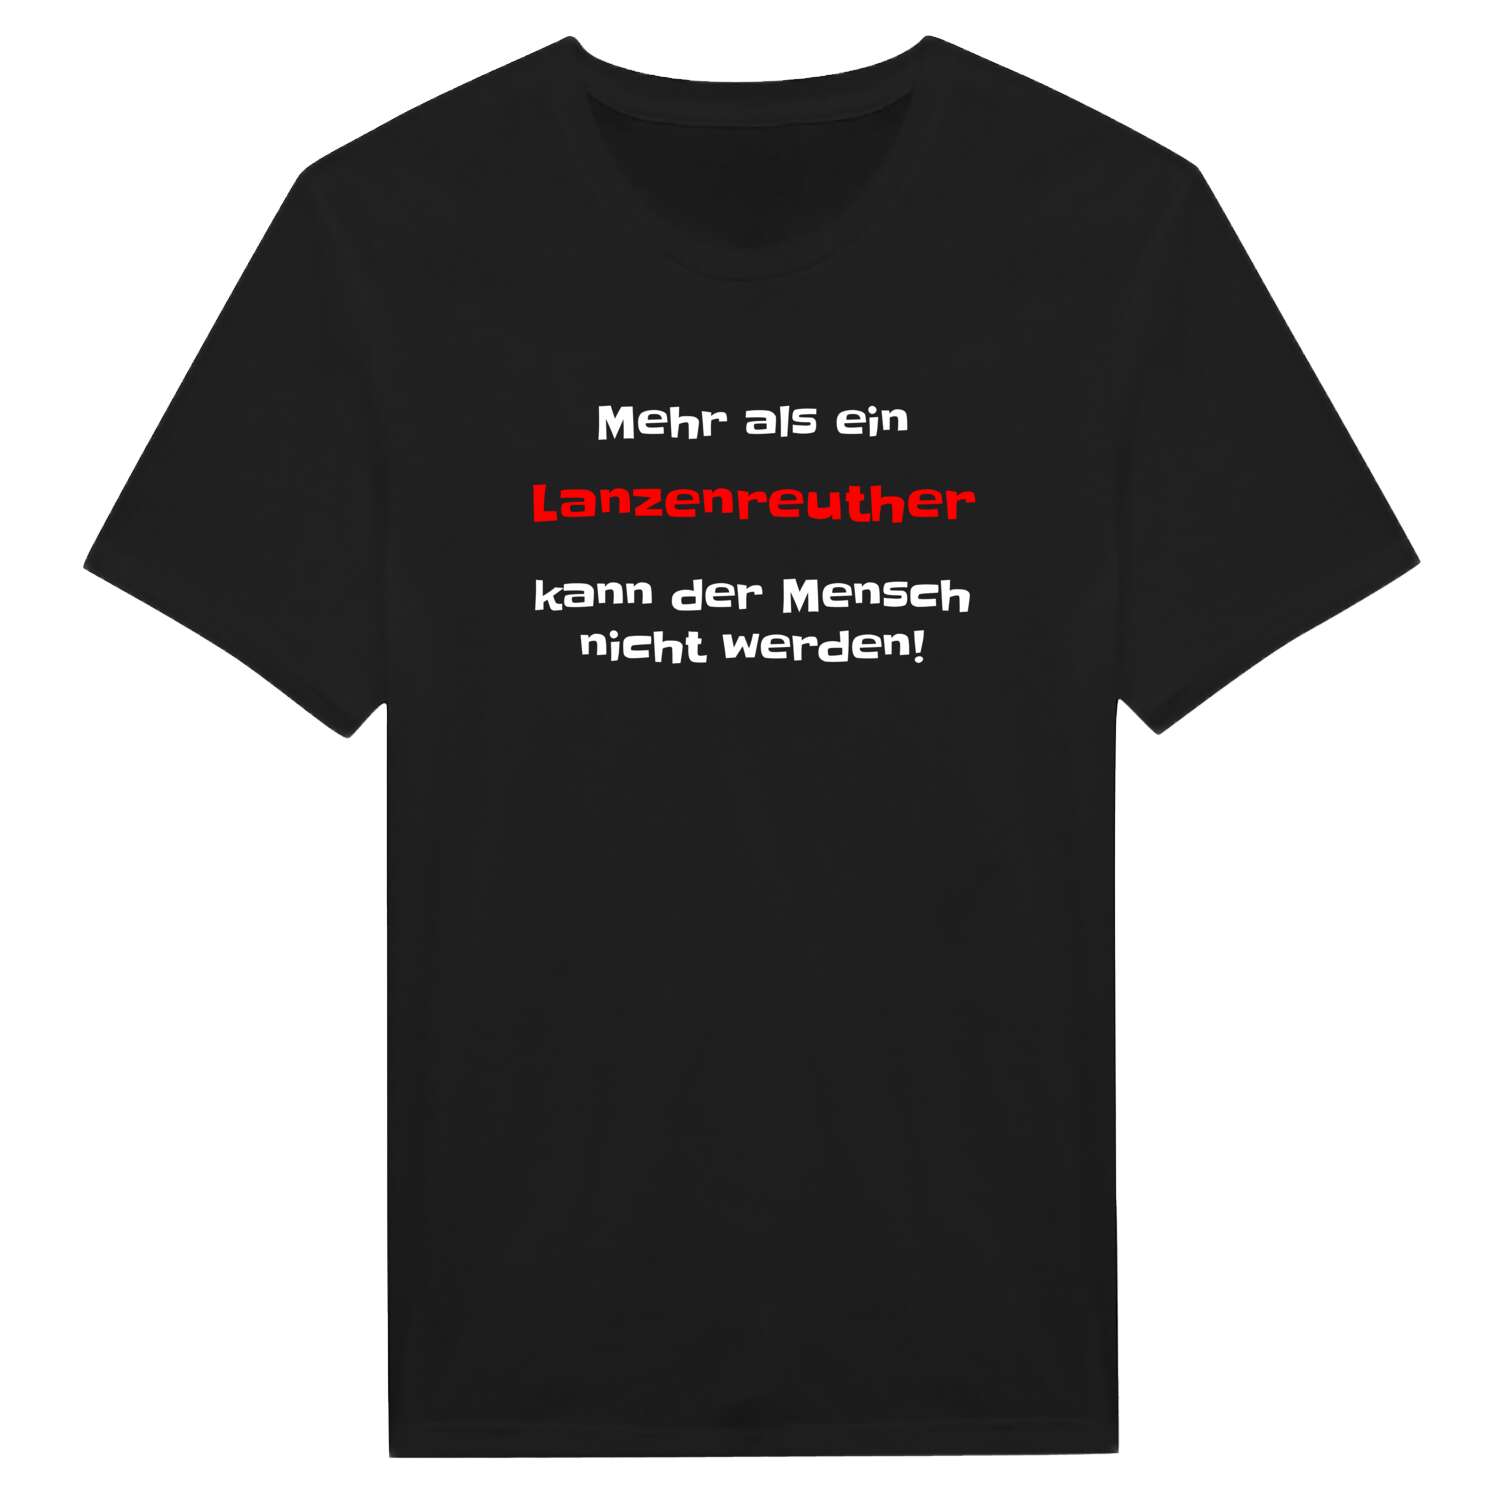 Lanzenreuth T-Shirt »Mehr als ein«